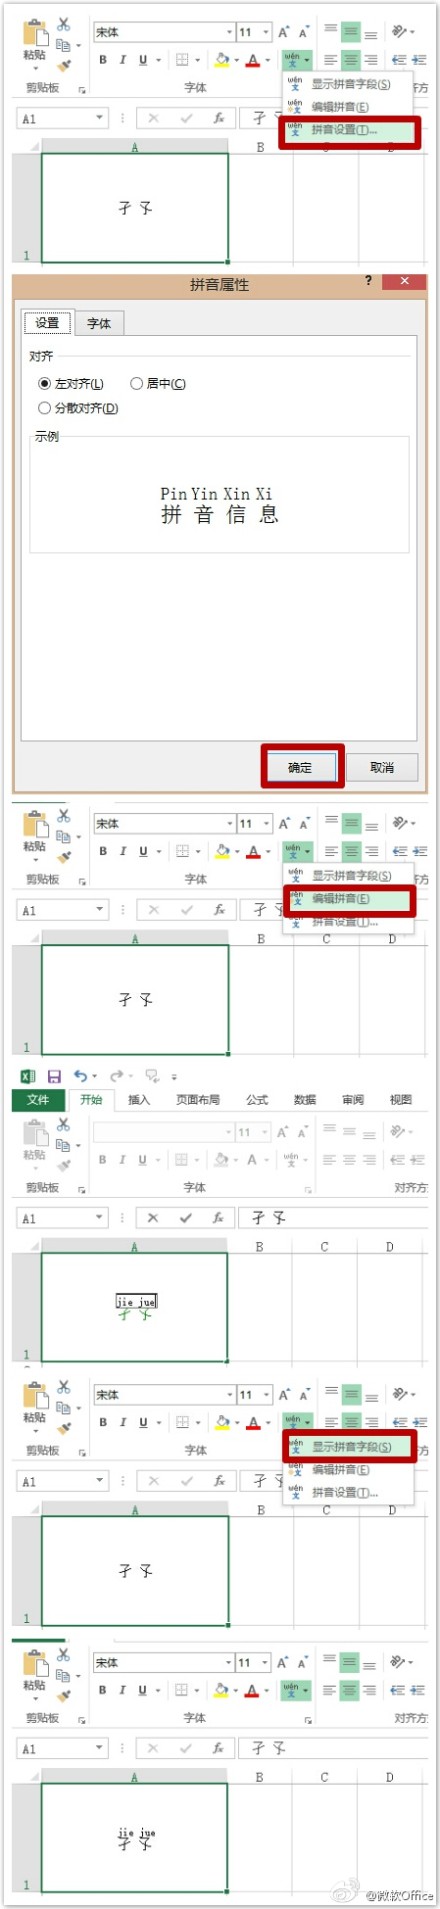 如何在Excel裡給漢字標注拼音？ 三聯